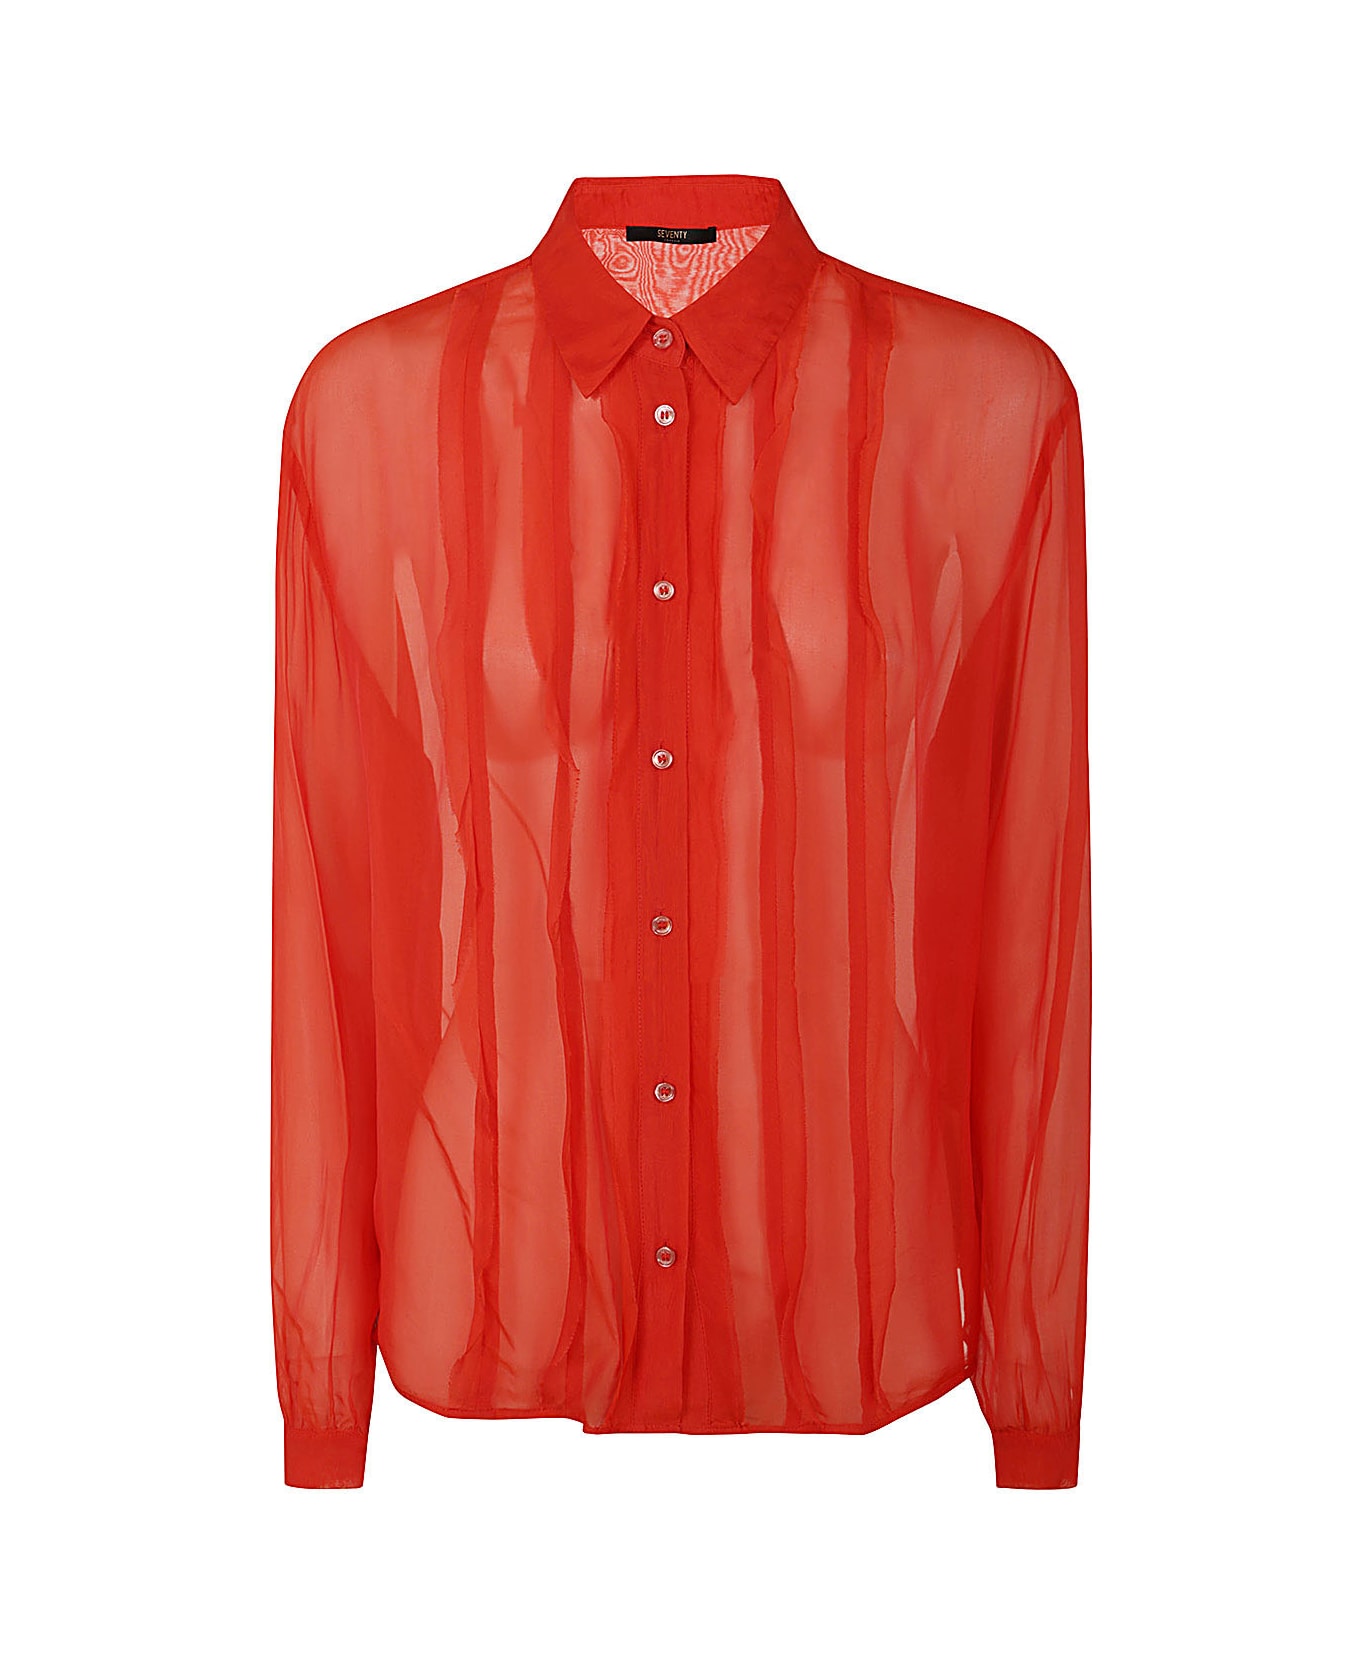 Seventy Shirt - Red